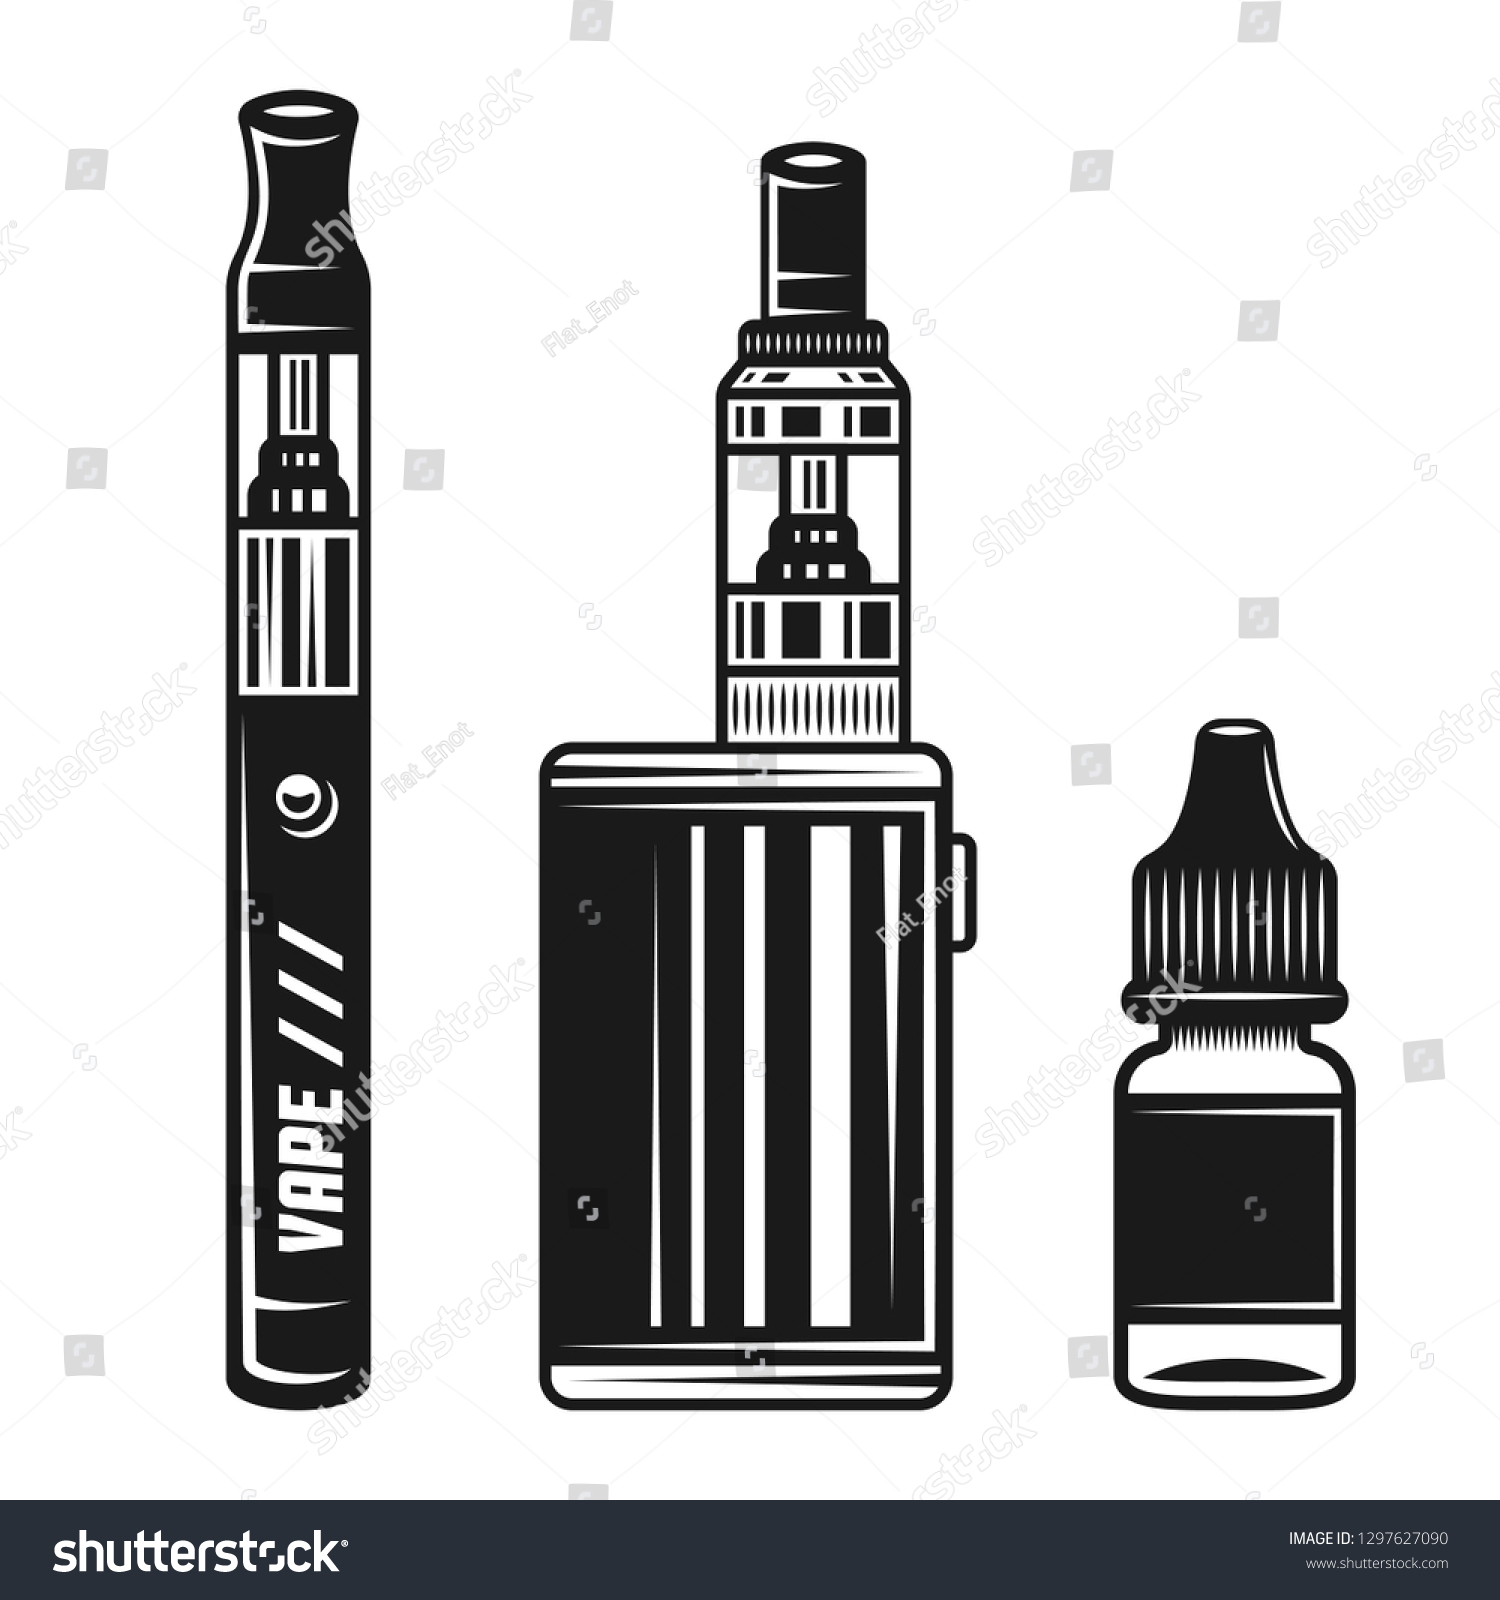 Логотип электронных сигарет